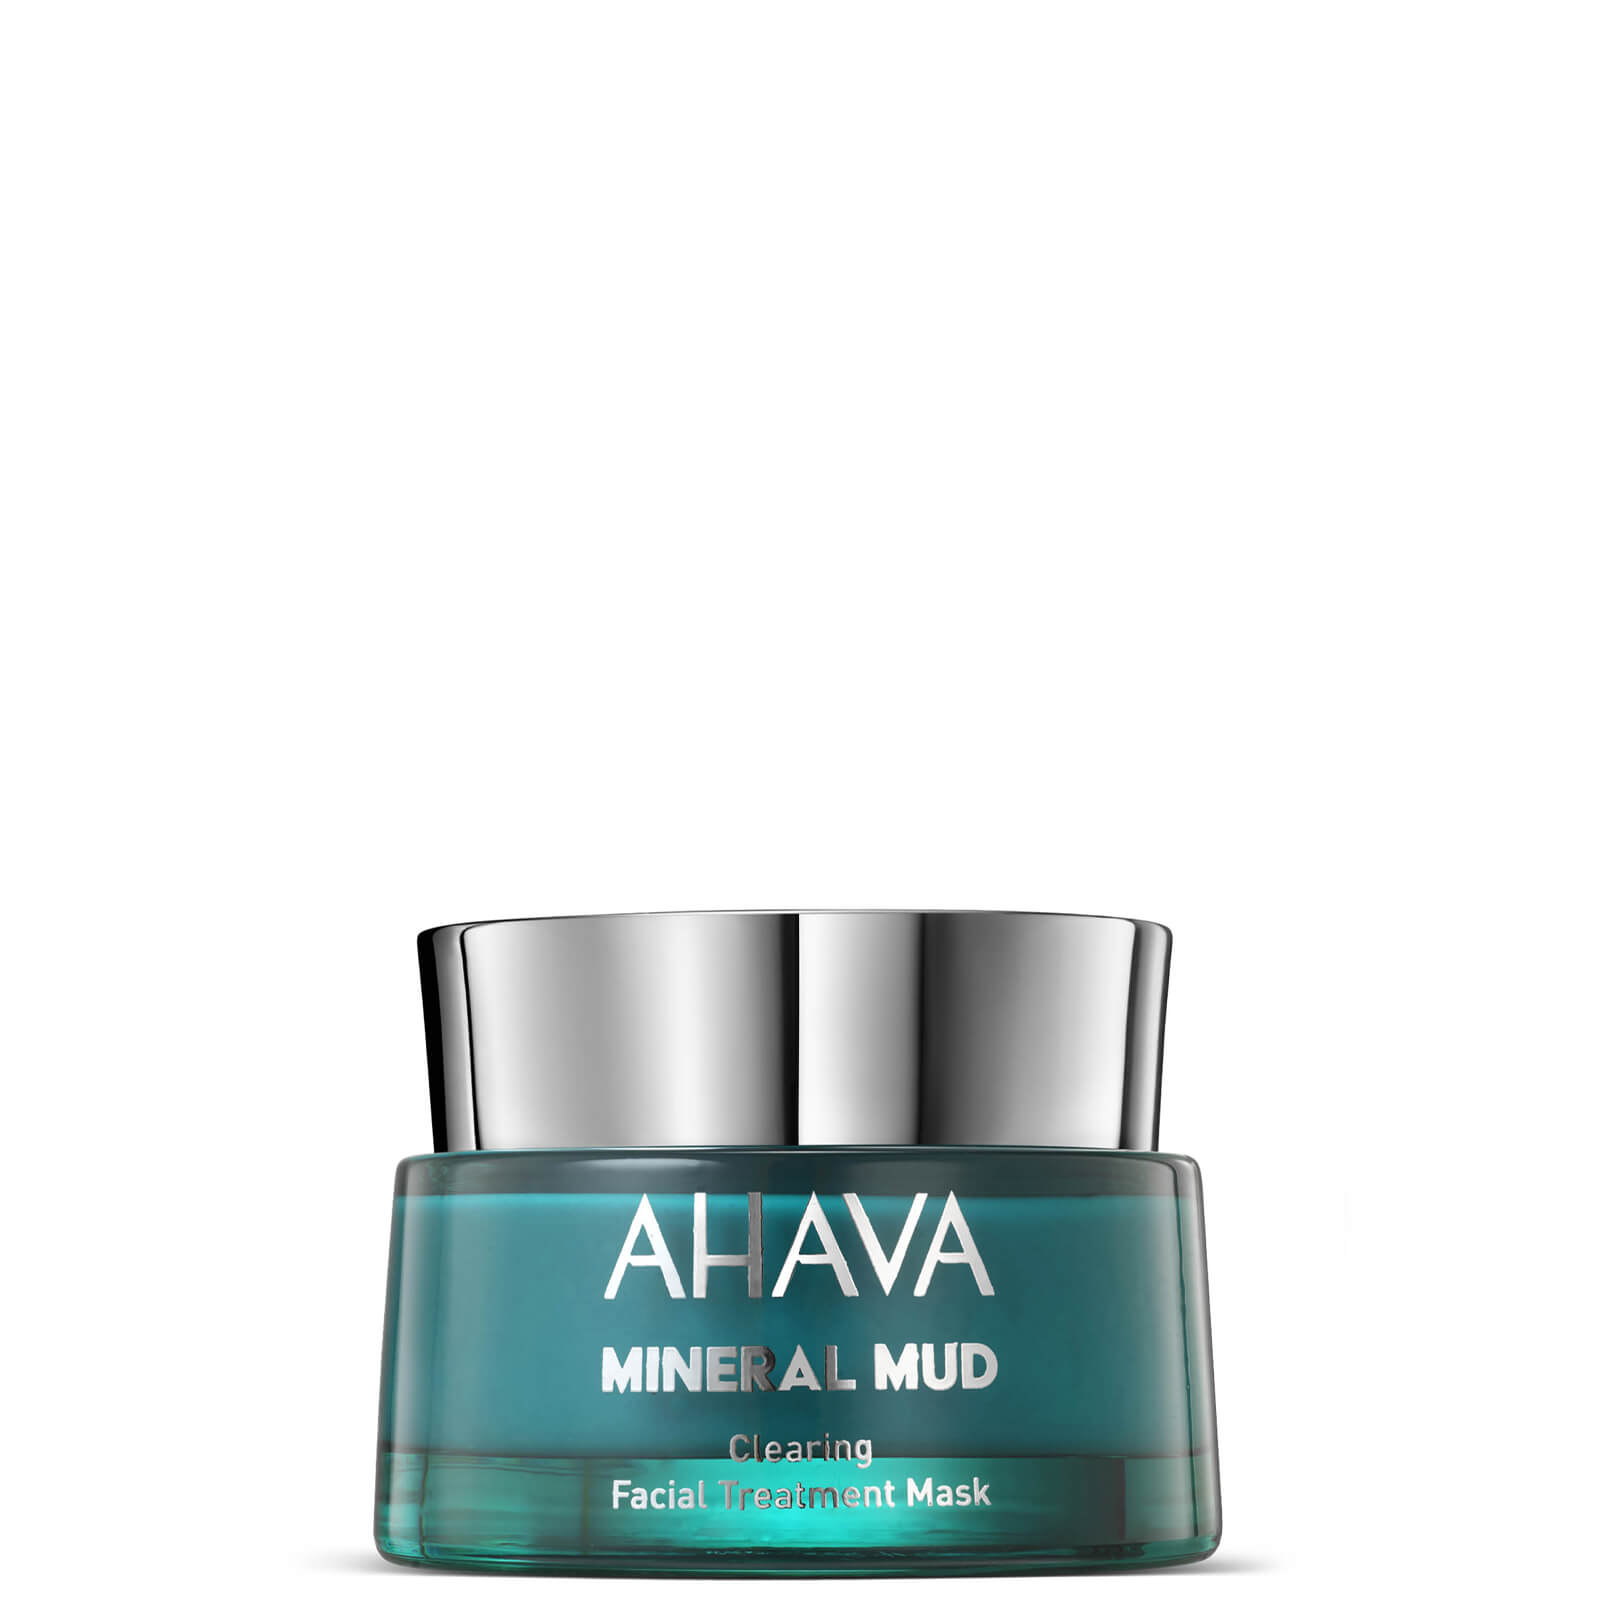 Zdjęcia - Maska do twarzy AHAVA Clearing Facial Treatment Mask oczyszczająca  50 ml 8 